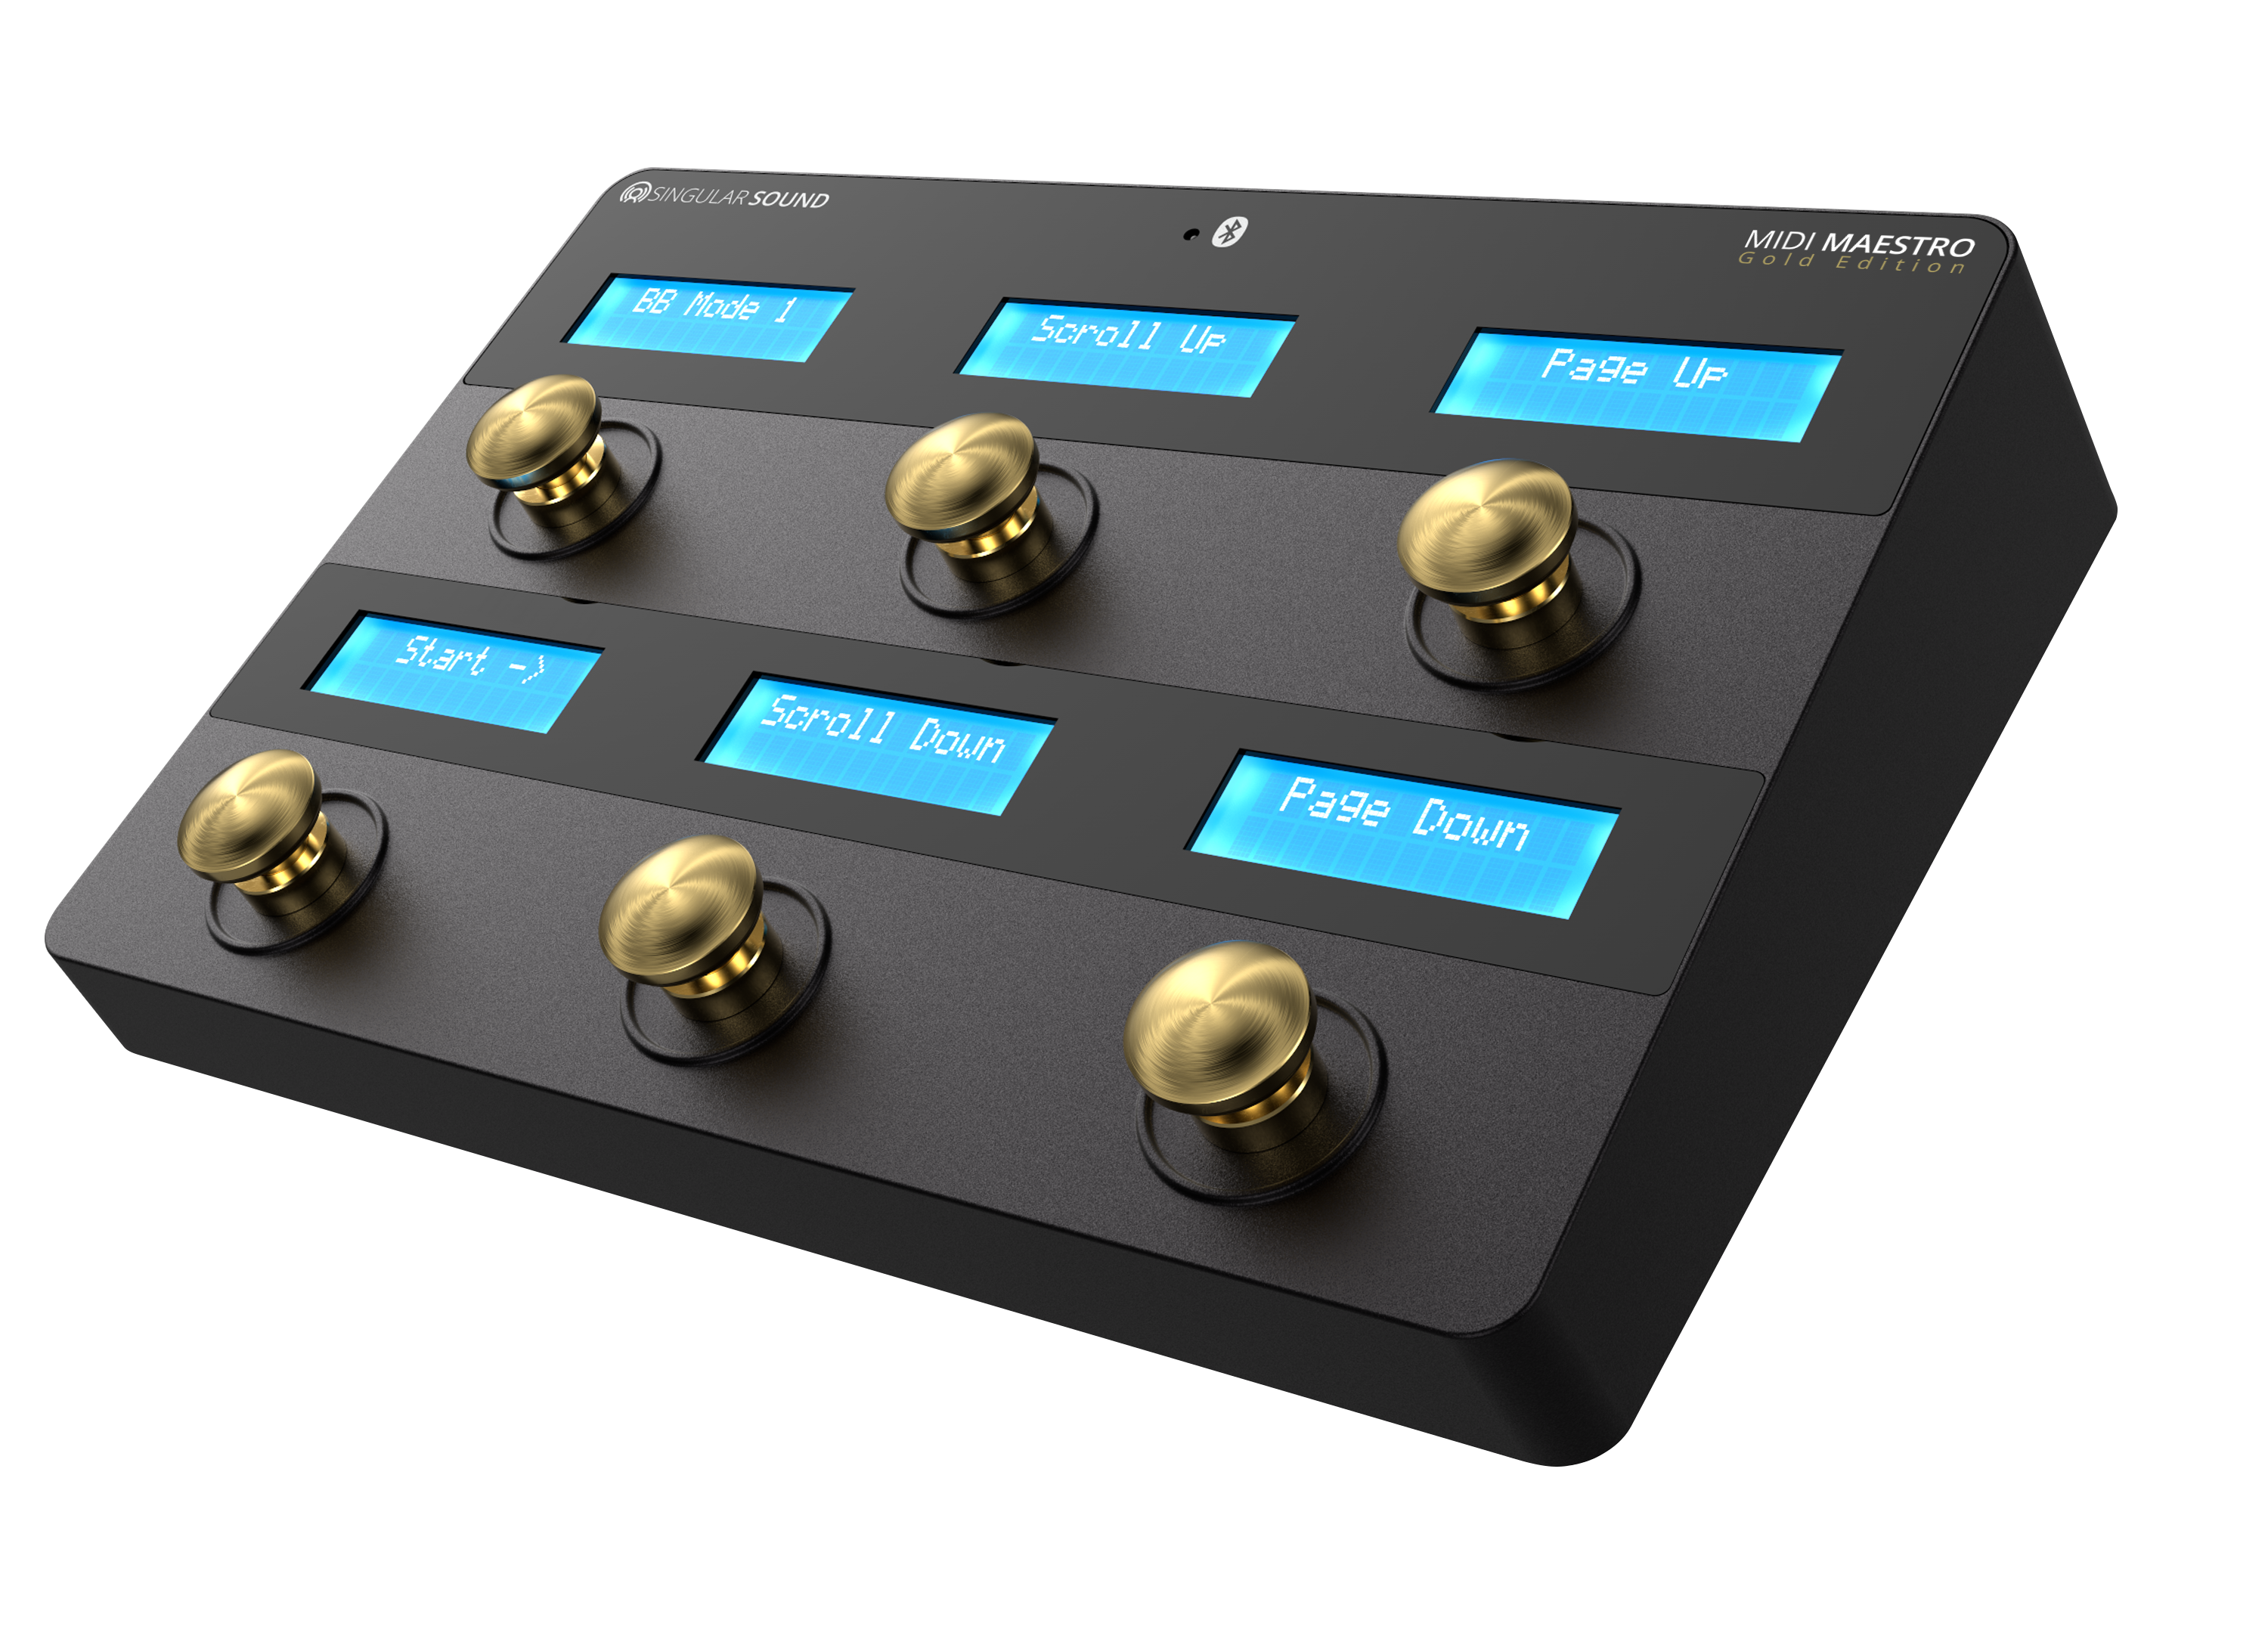 MIDI Maestro Gold Edition: the Easy, Customizable MIDI Foot Controller